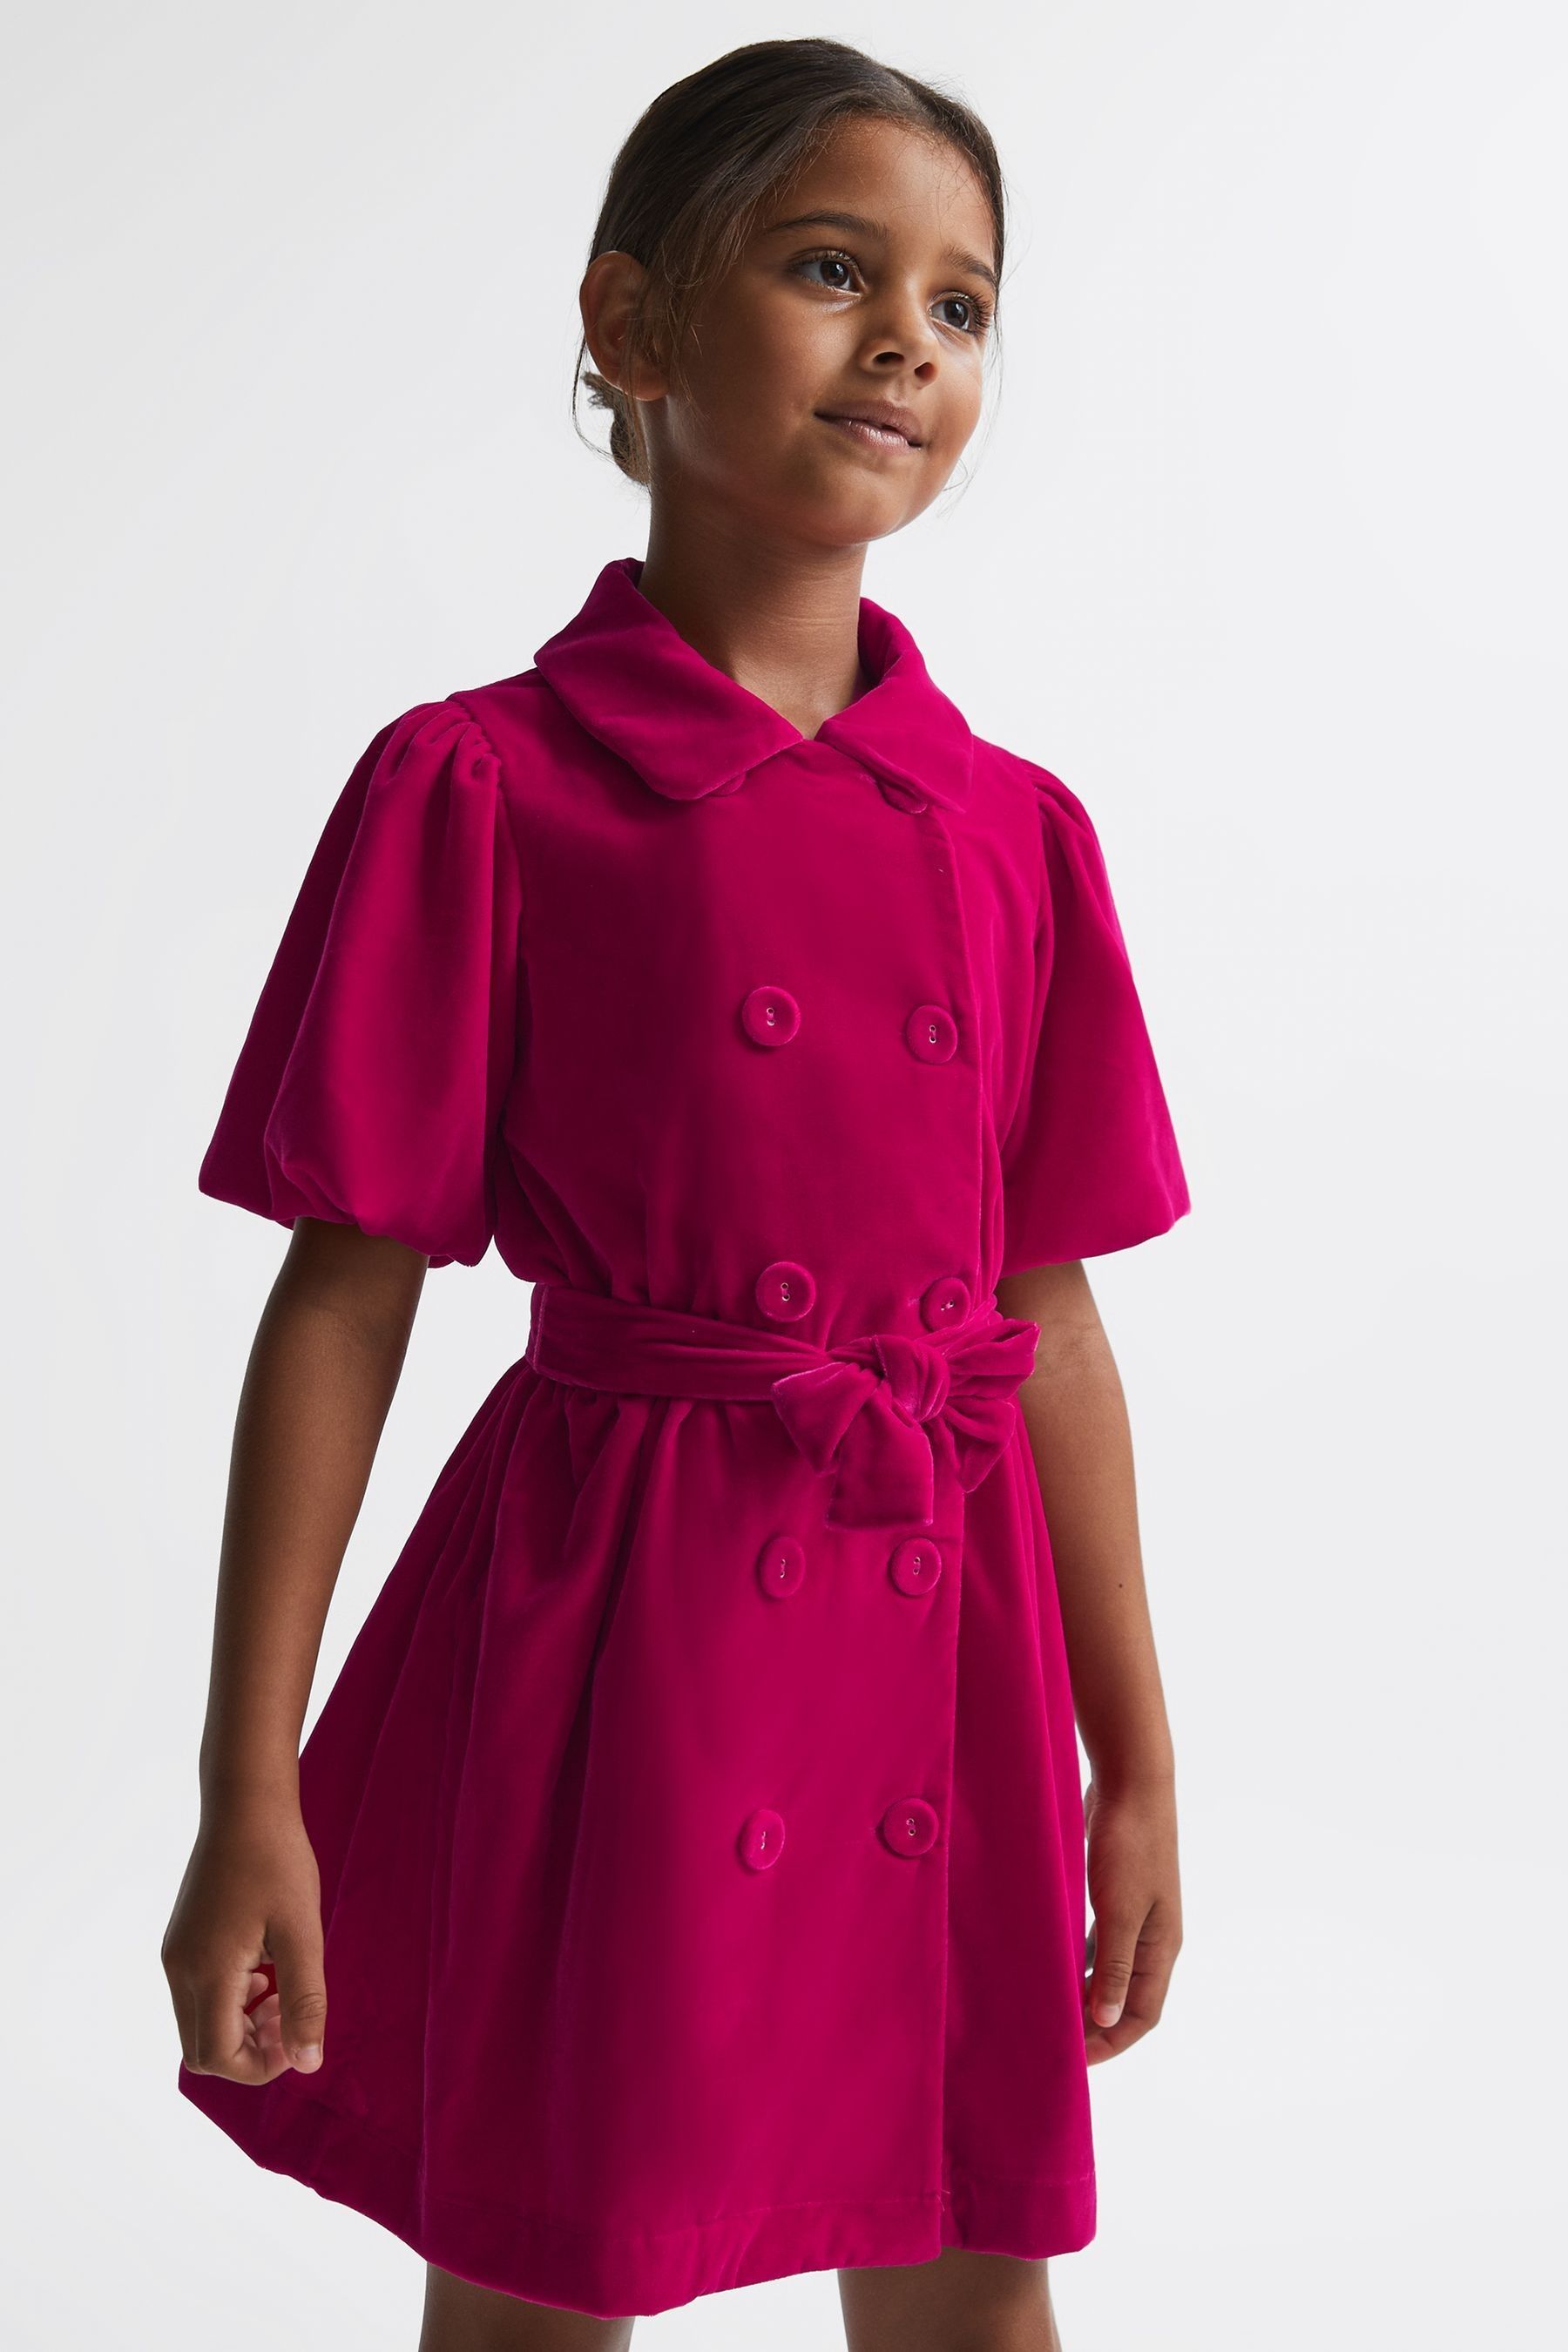 Reiss Kids' Nancy - Pink Senior Velvet Double Breasted Dress, 13 - 14 Years